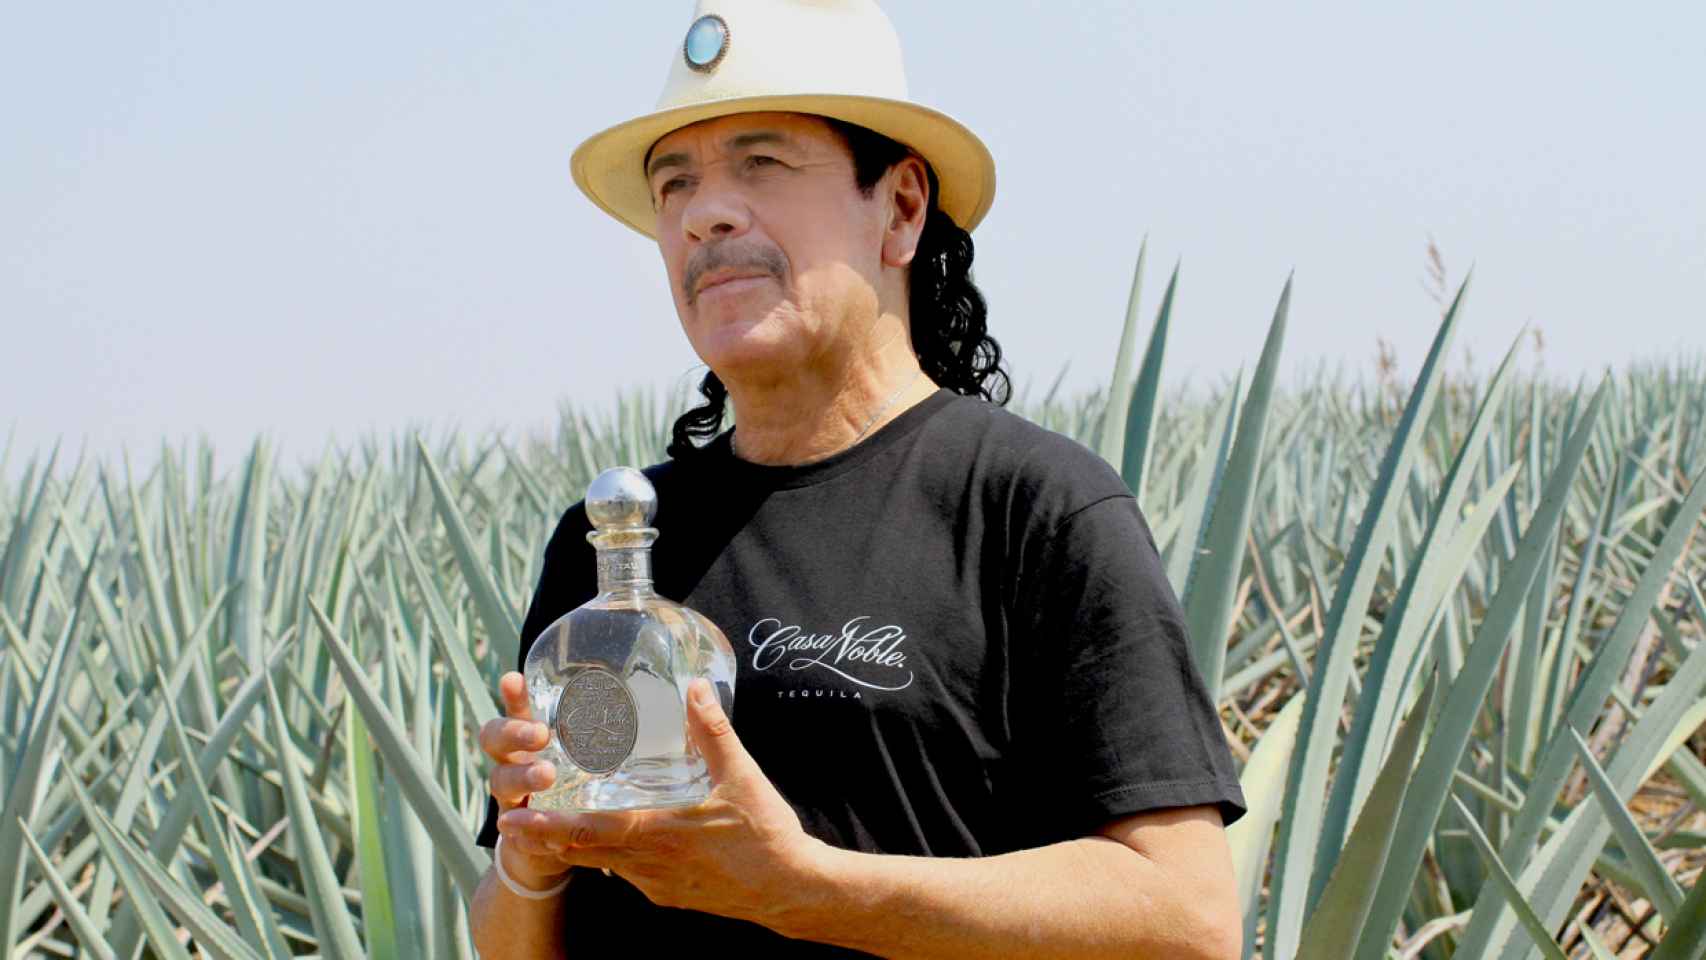 El músico Carlos Santana muestra orgulloso su tequila, Casa Vieja.